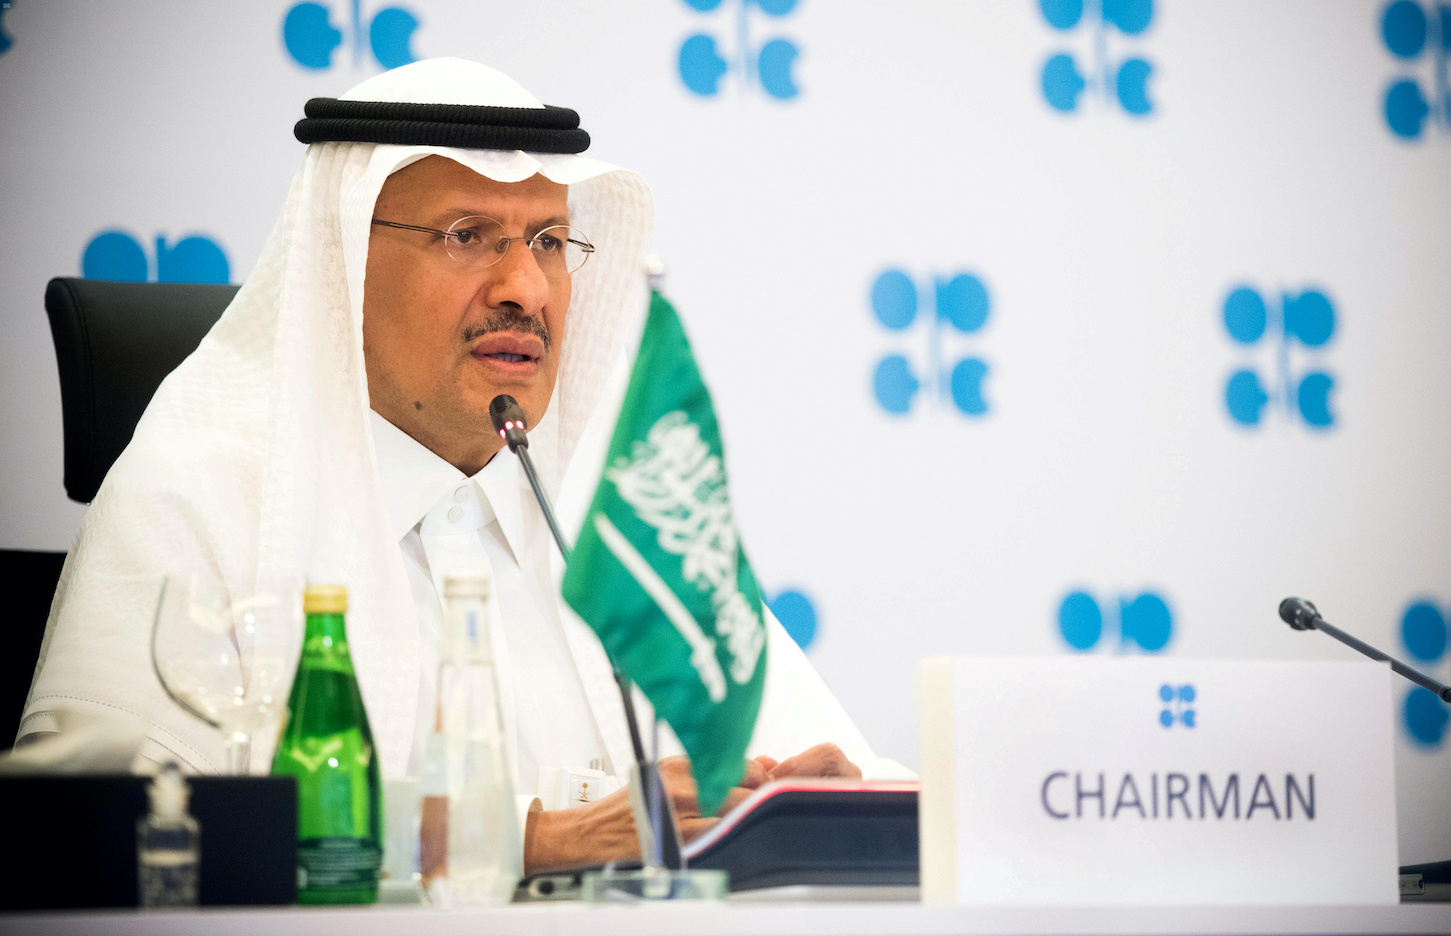 El petróleo sigue subiendo tras la advertencia de Bin Salman a los especuladores